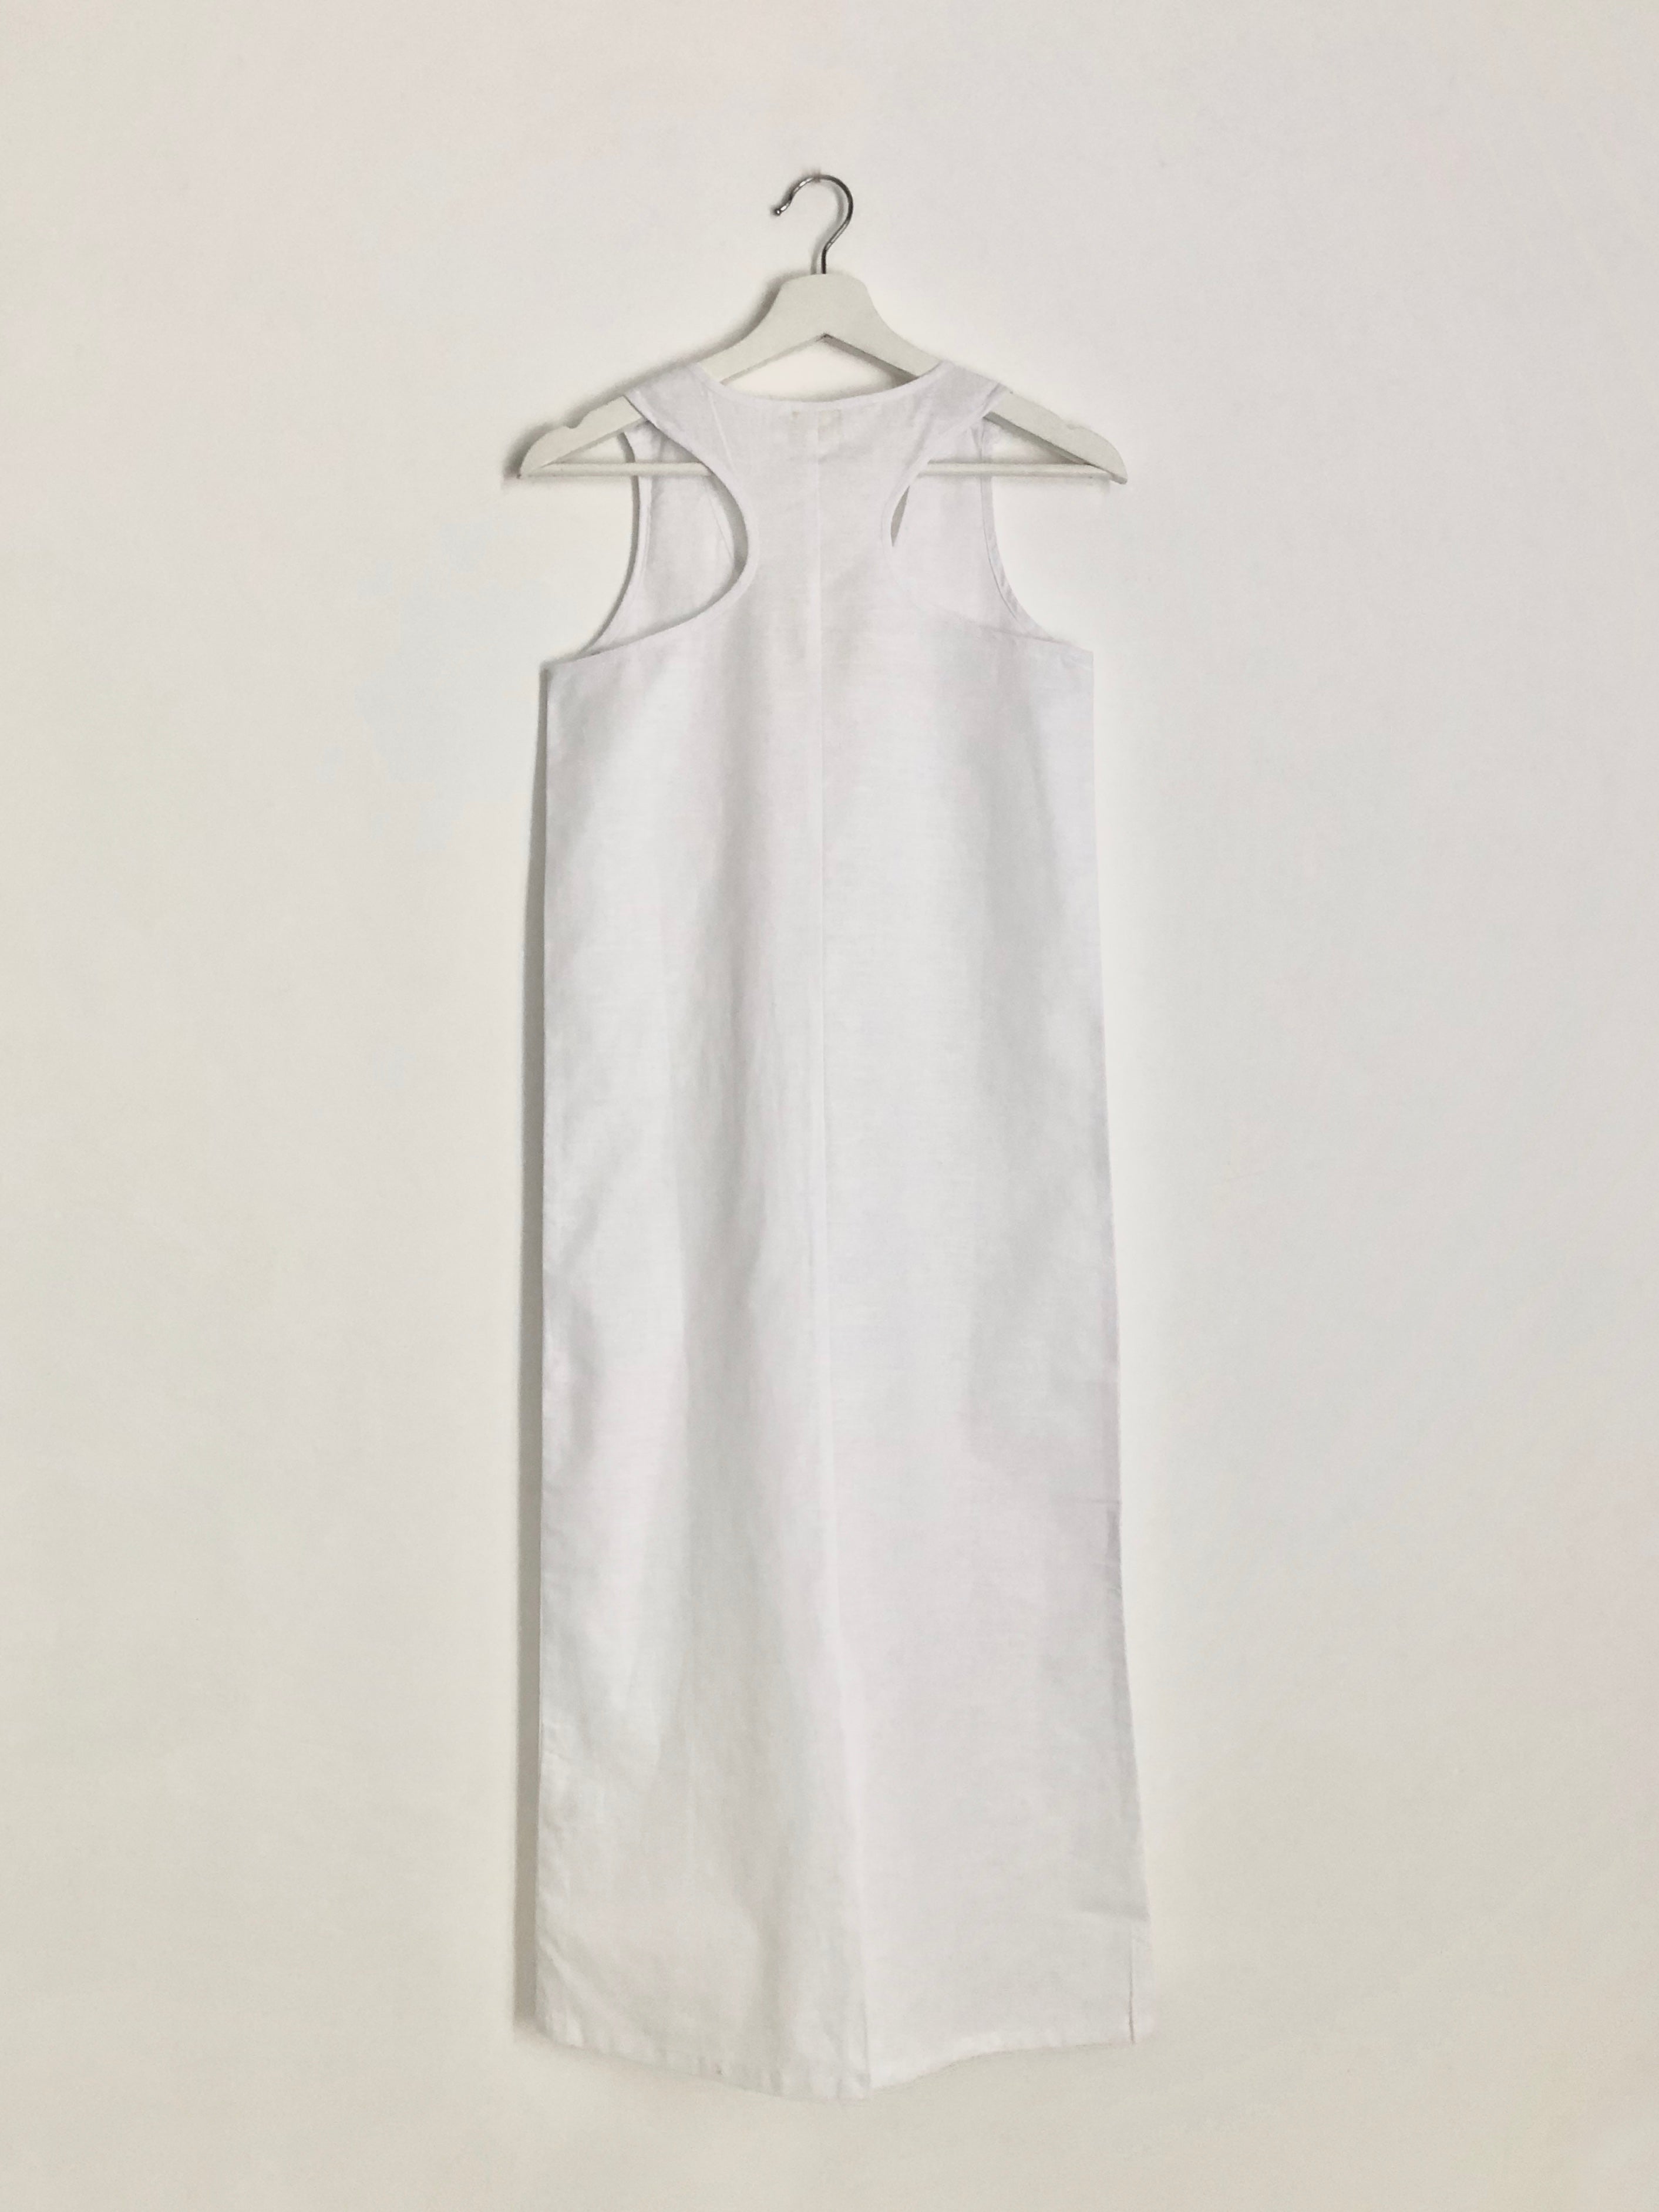 MIDI TANK DRESS in white